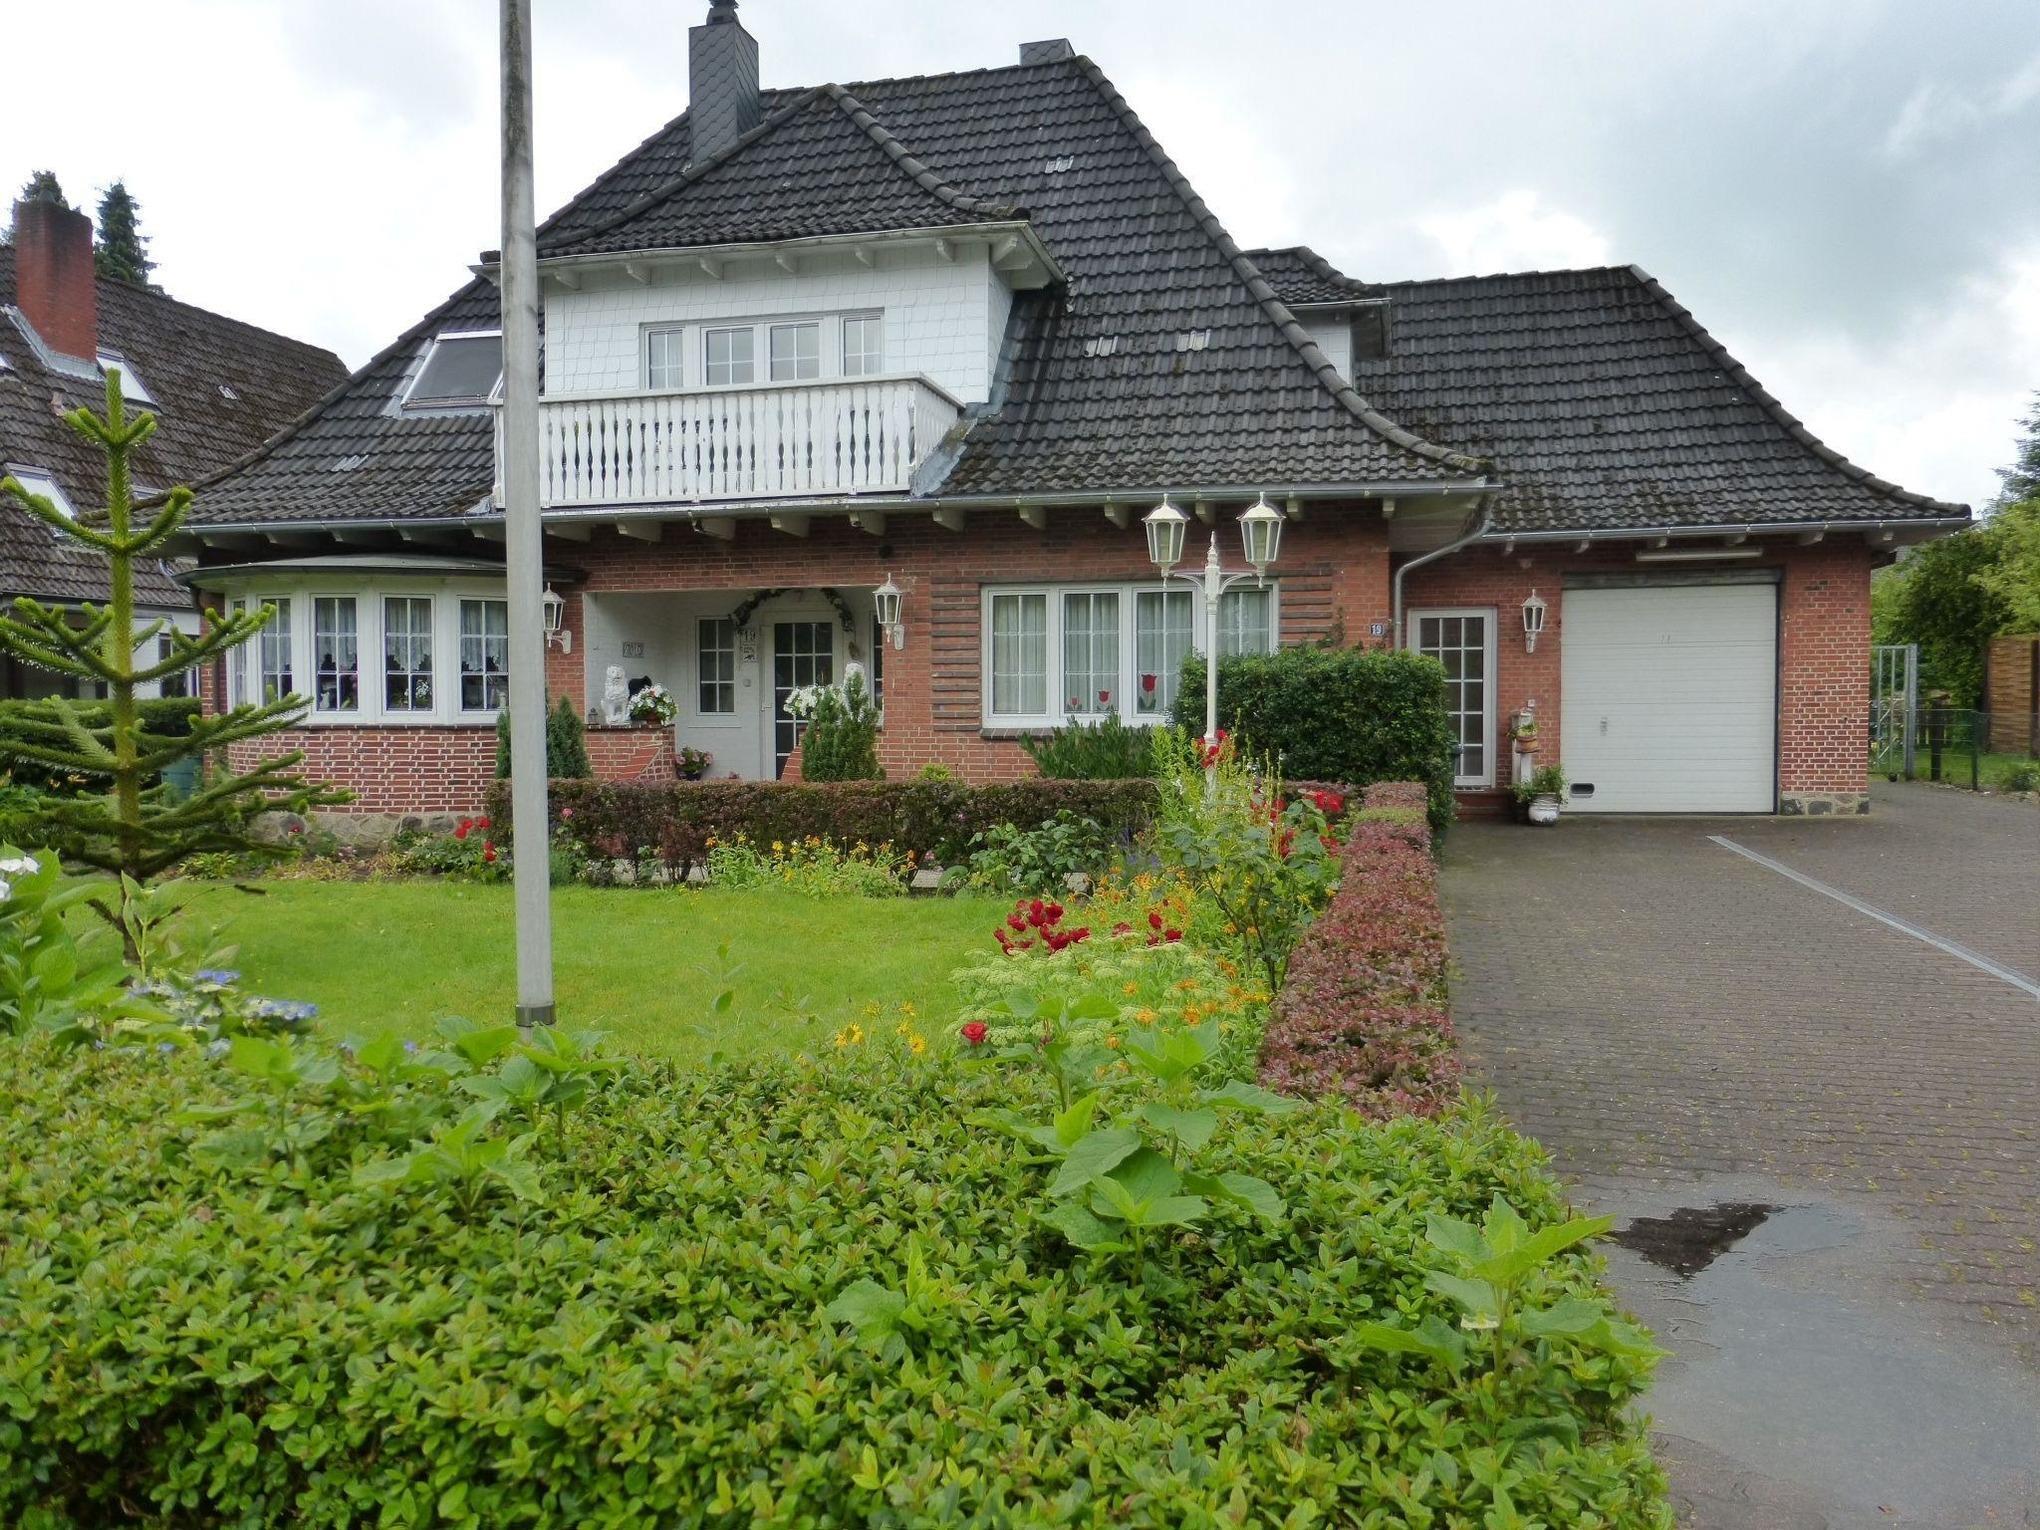 Ferienhaus Hennstedt - Objekt Nr. 512-1847606